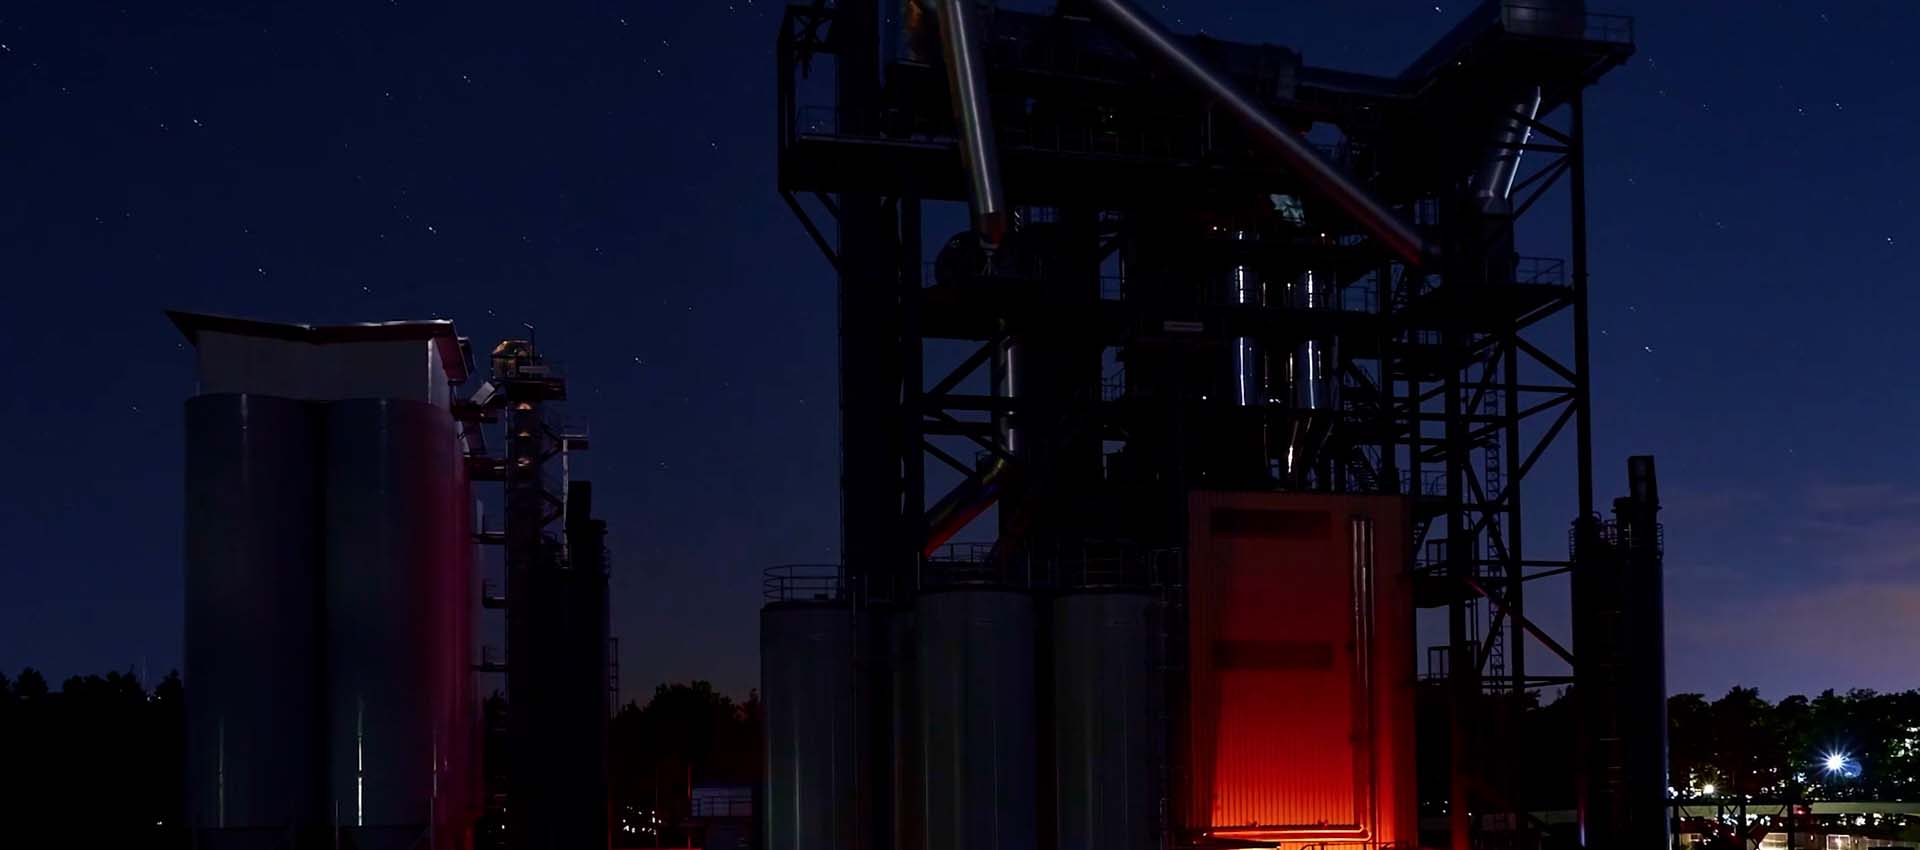 fabrik bei nacht unter sternenhimmel